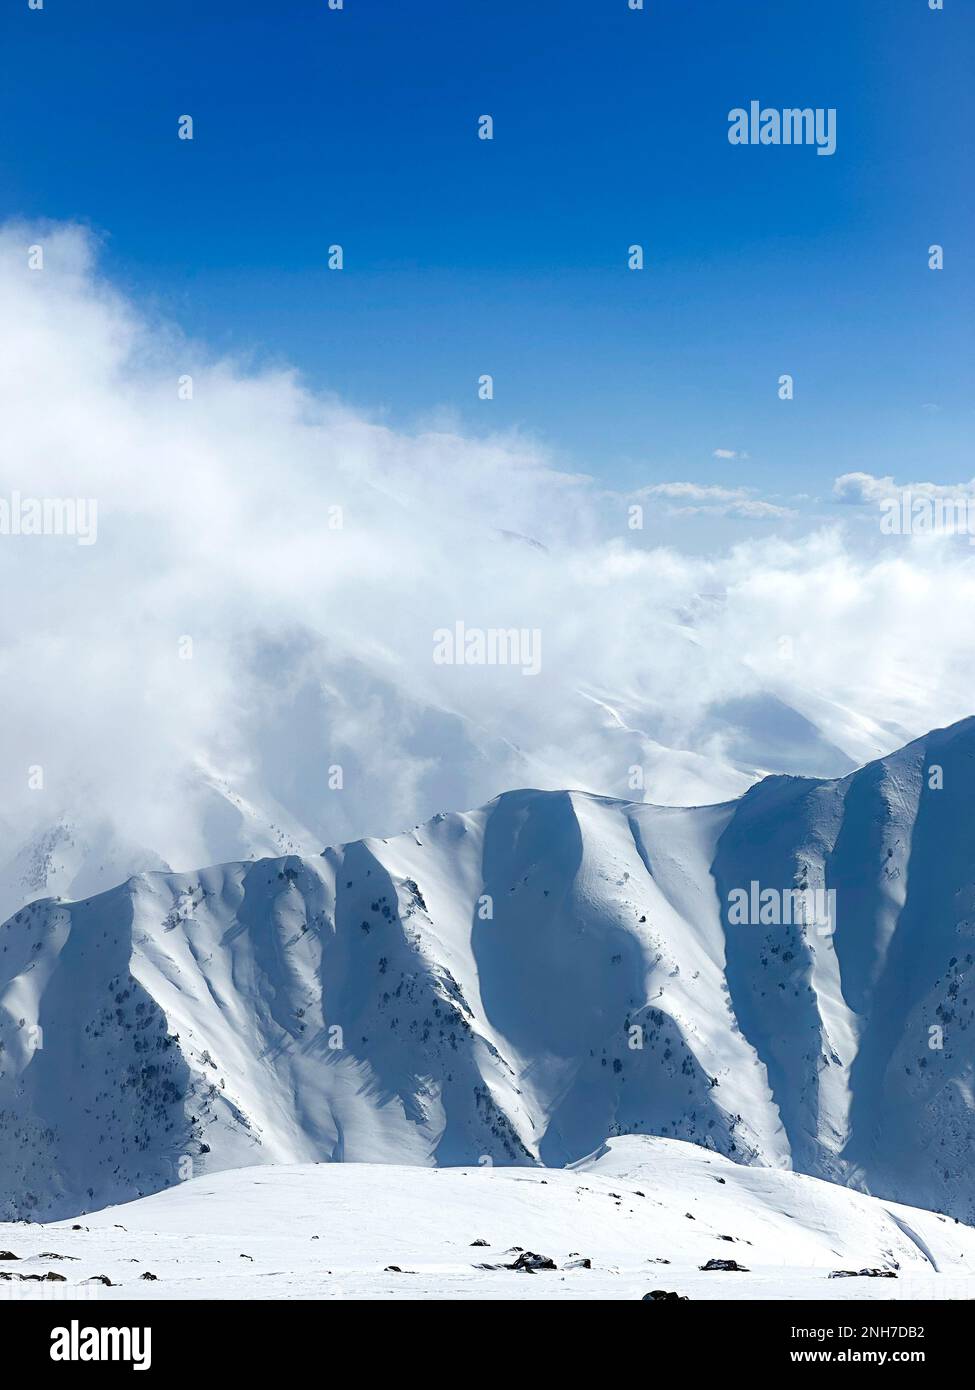 La neige couvrait les sommets de l'Himalaya. Les glaciers sont source d'eau pour l'Inde, le bangladesh, le Népal et d'autres pays asiatiques. Montagnes enneigées. Banque D'Images